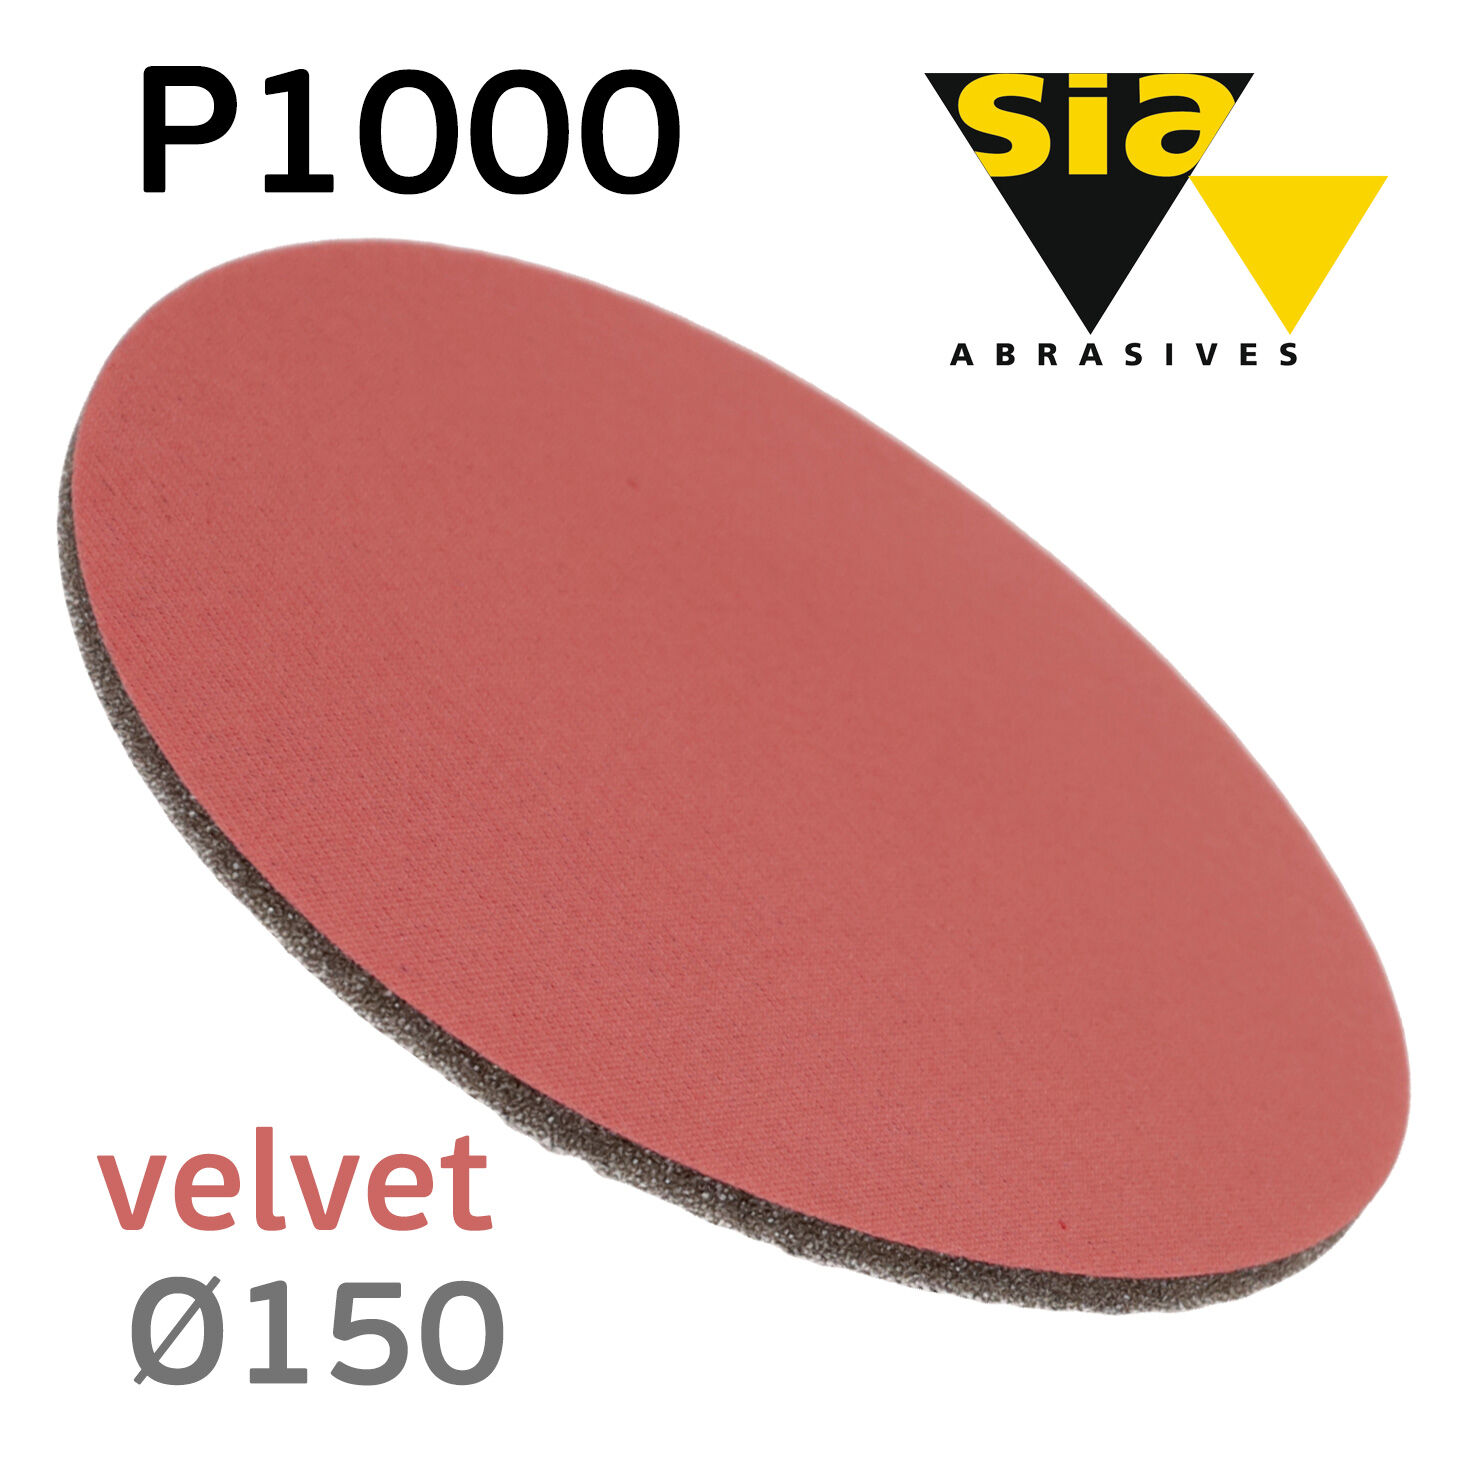 Круг на поролоне SIA velvet Р1000 (150мм) шлифовальный с липучкой